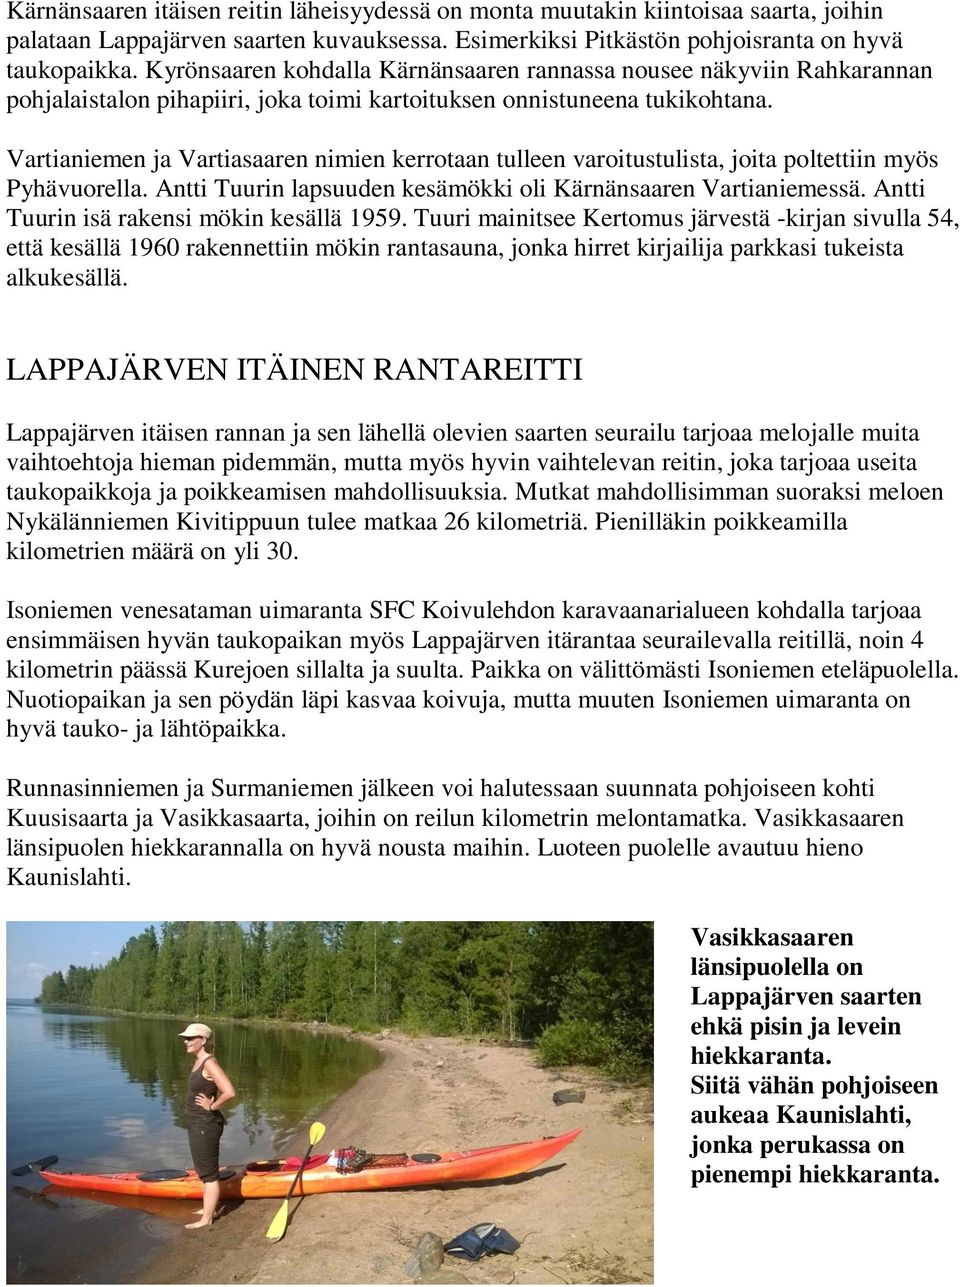 Vartianiemen ja Vartiasaaren nimien kerrotaan tulleen varoitustulista, joita poltettiin myös Pyhävuorella. Antti Tuurin lapsuuden kesämökki oli Kärnänsaaren Vartianiemessä.